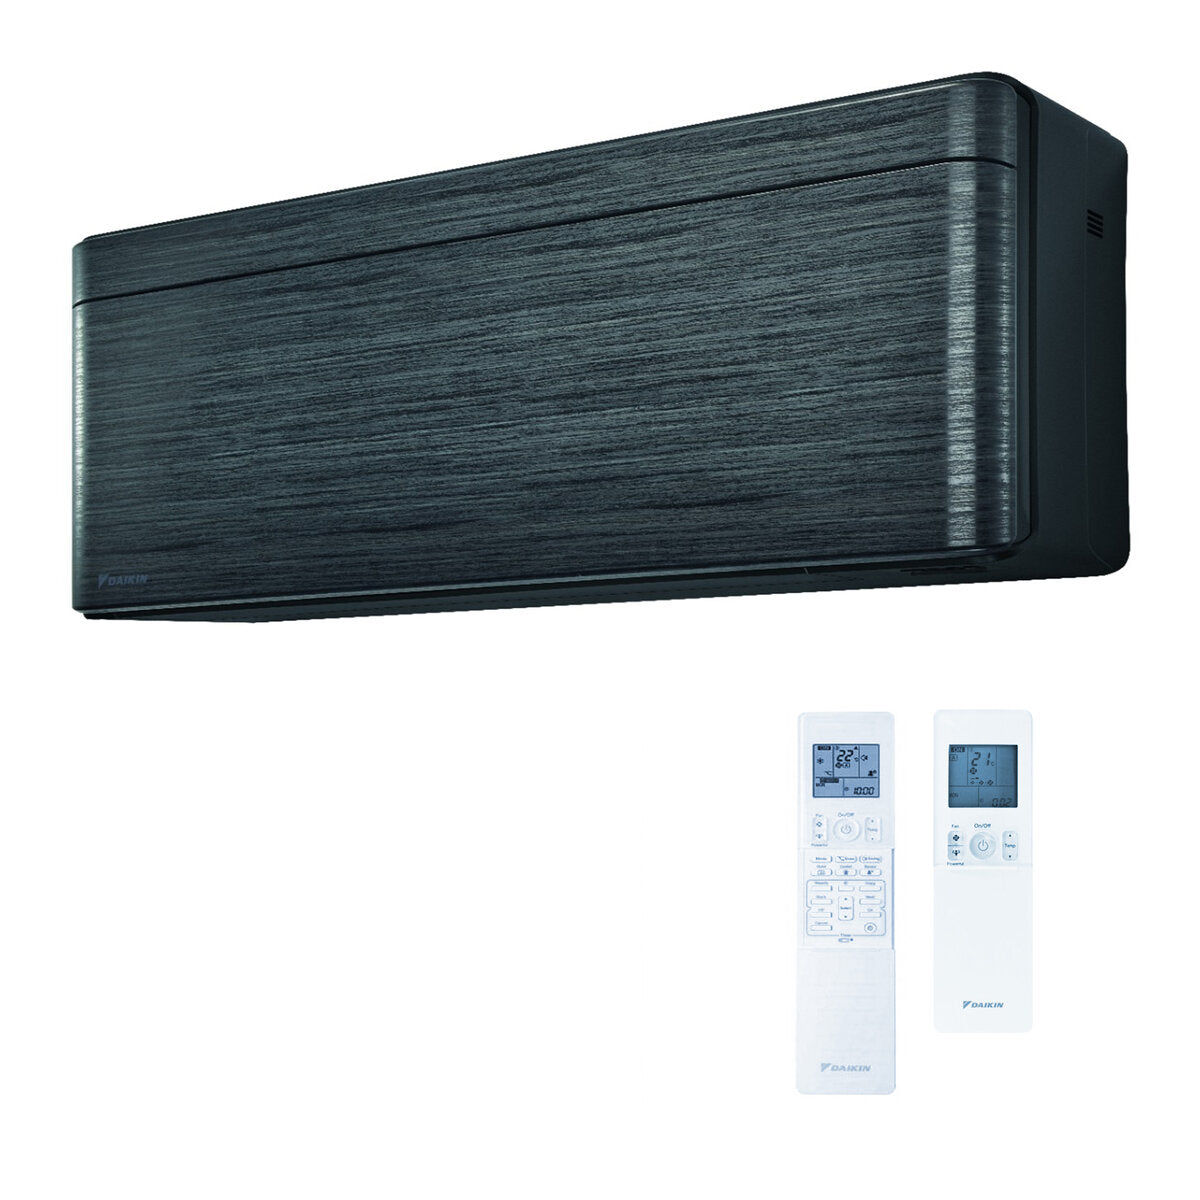 Daikin Stylish dual split air conditioner 9000 + 9000 BTU inverter A +++ wifi outdoor unit 5.0 kW